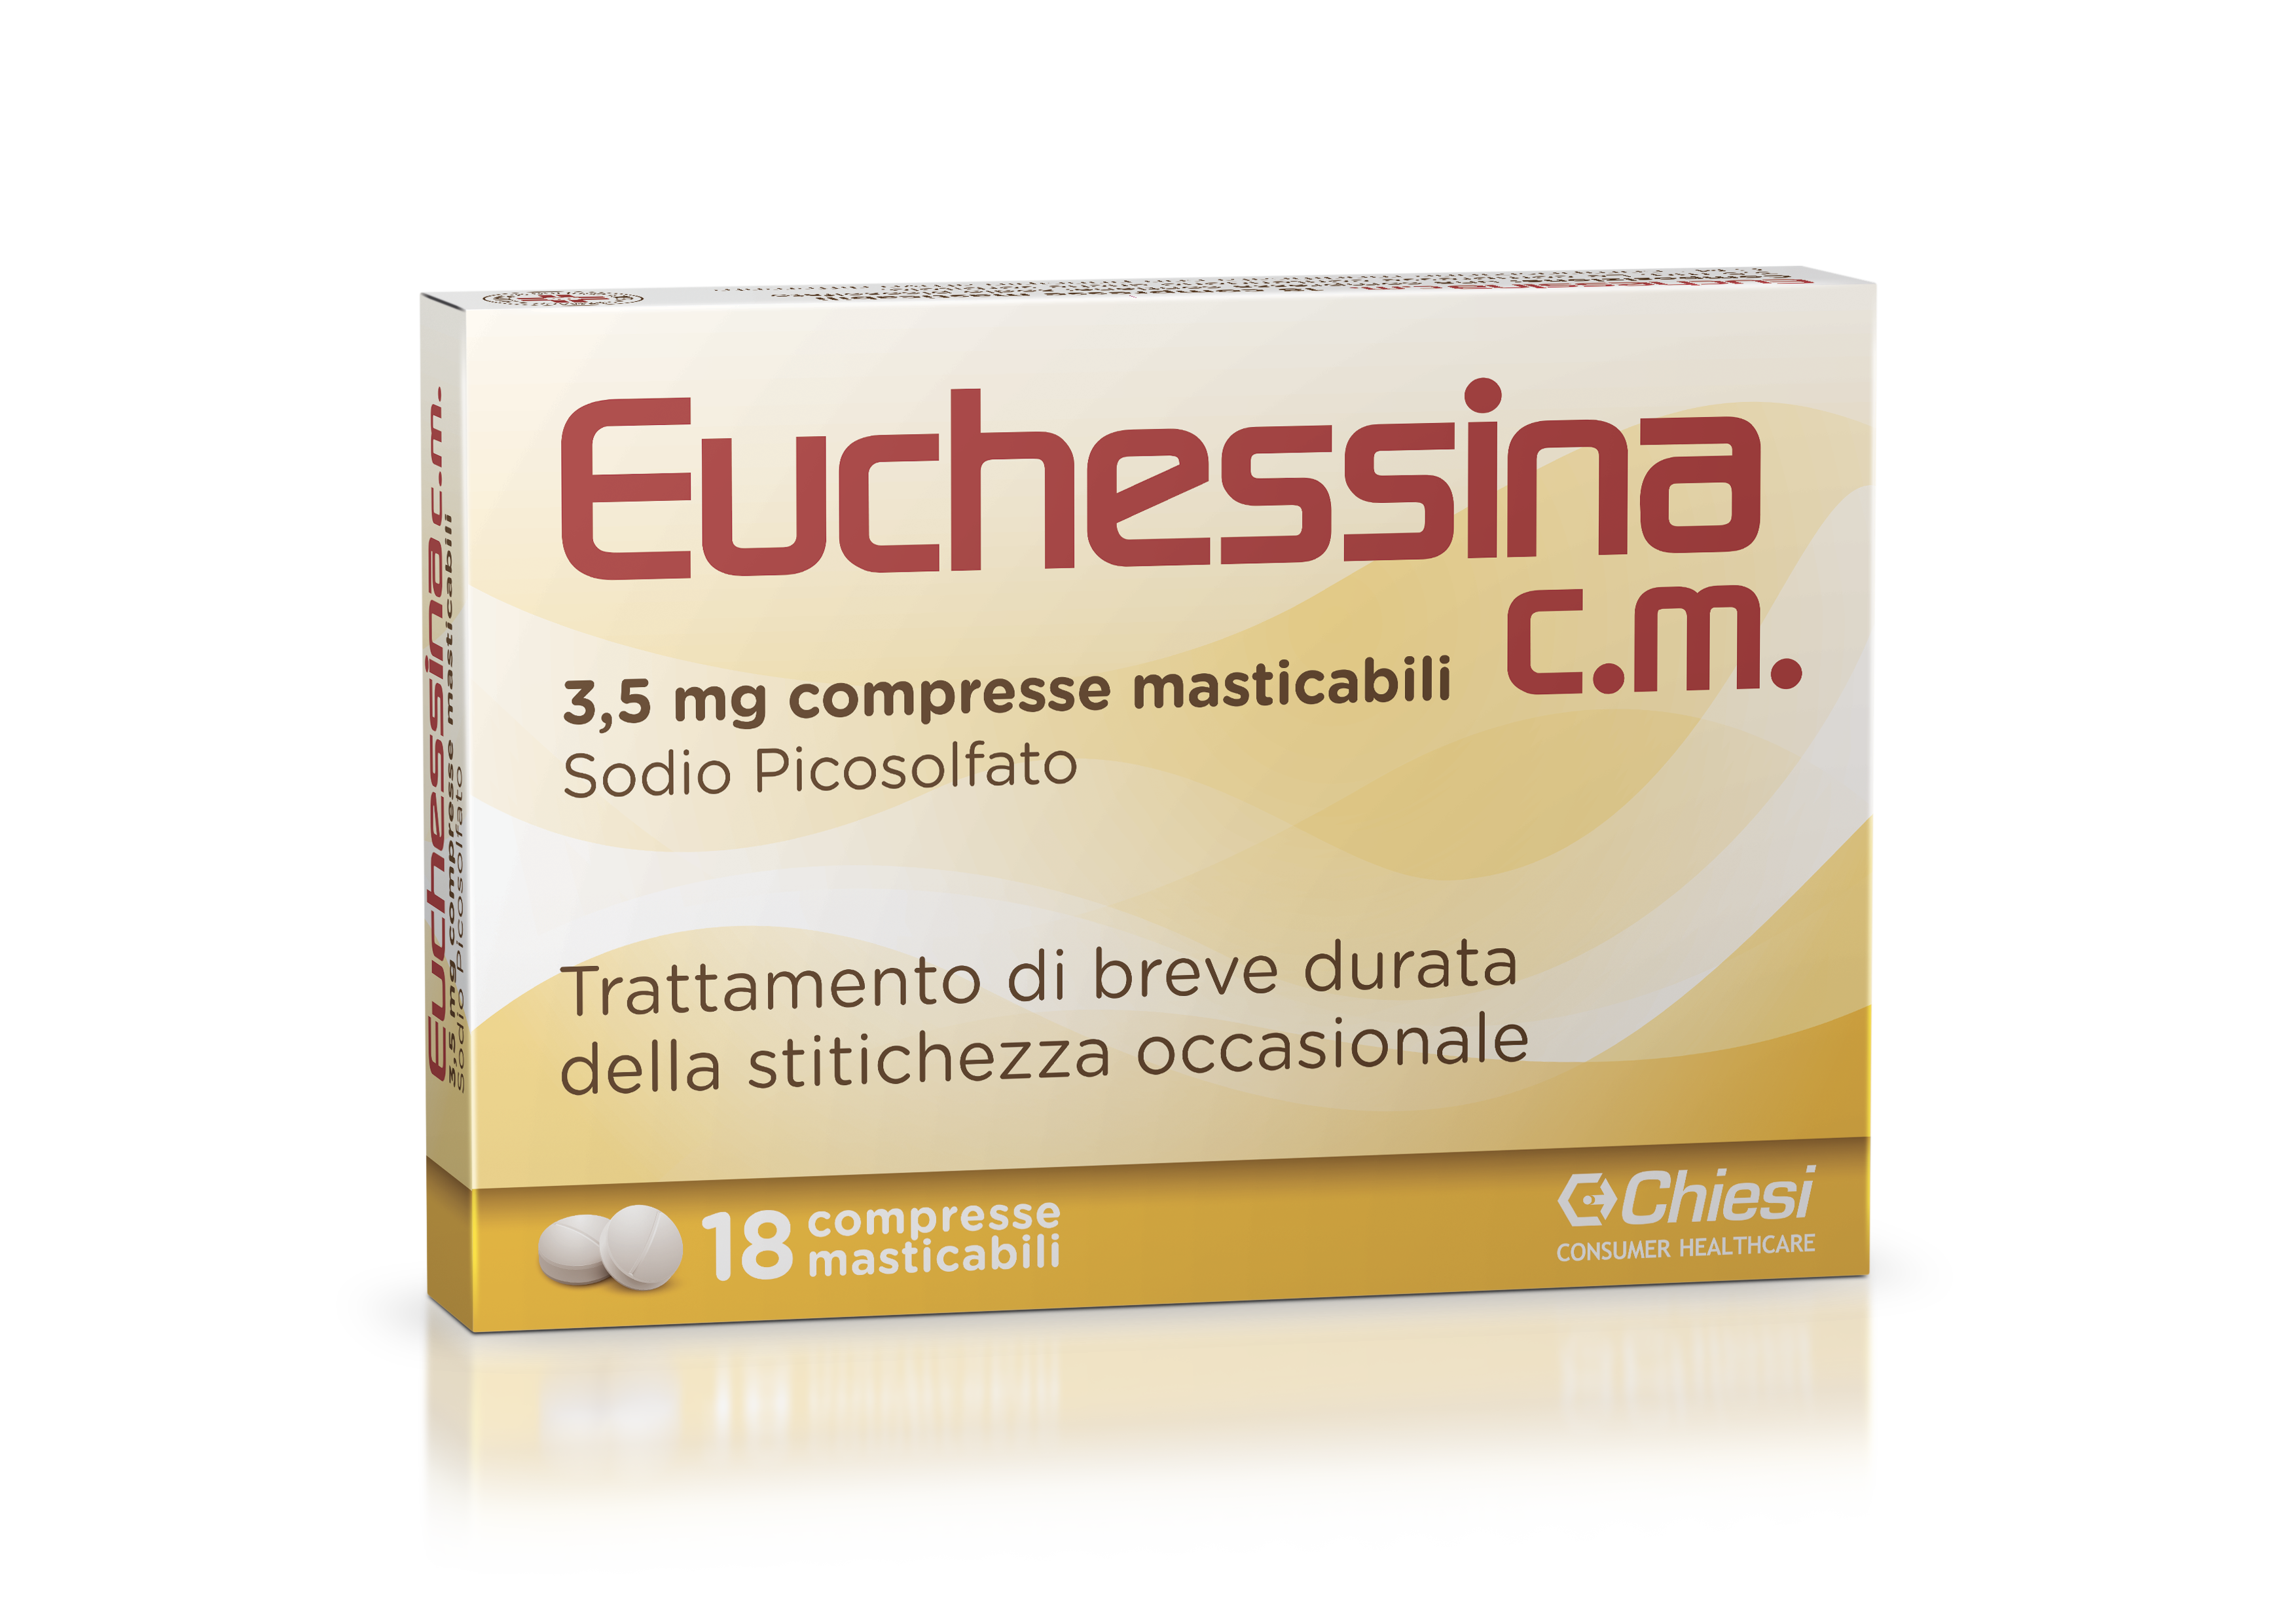 Immagine della confezione di Euchessina cm, farmaco di Chiesi Farmaceutici S.p.A.